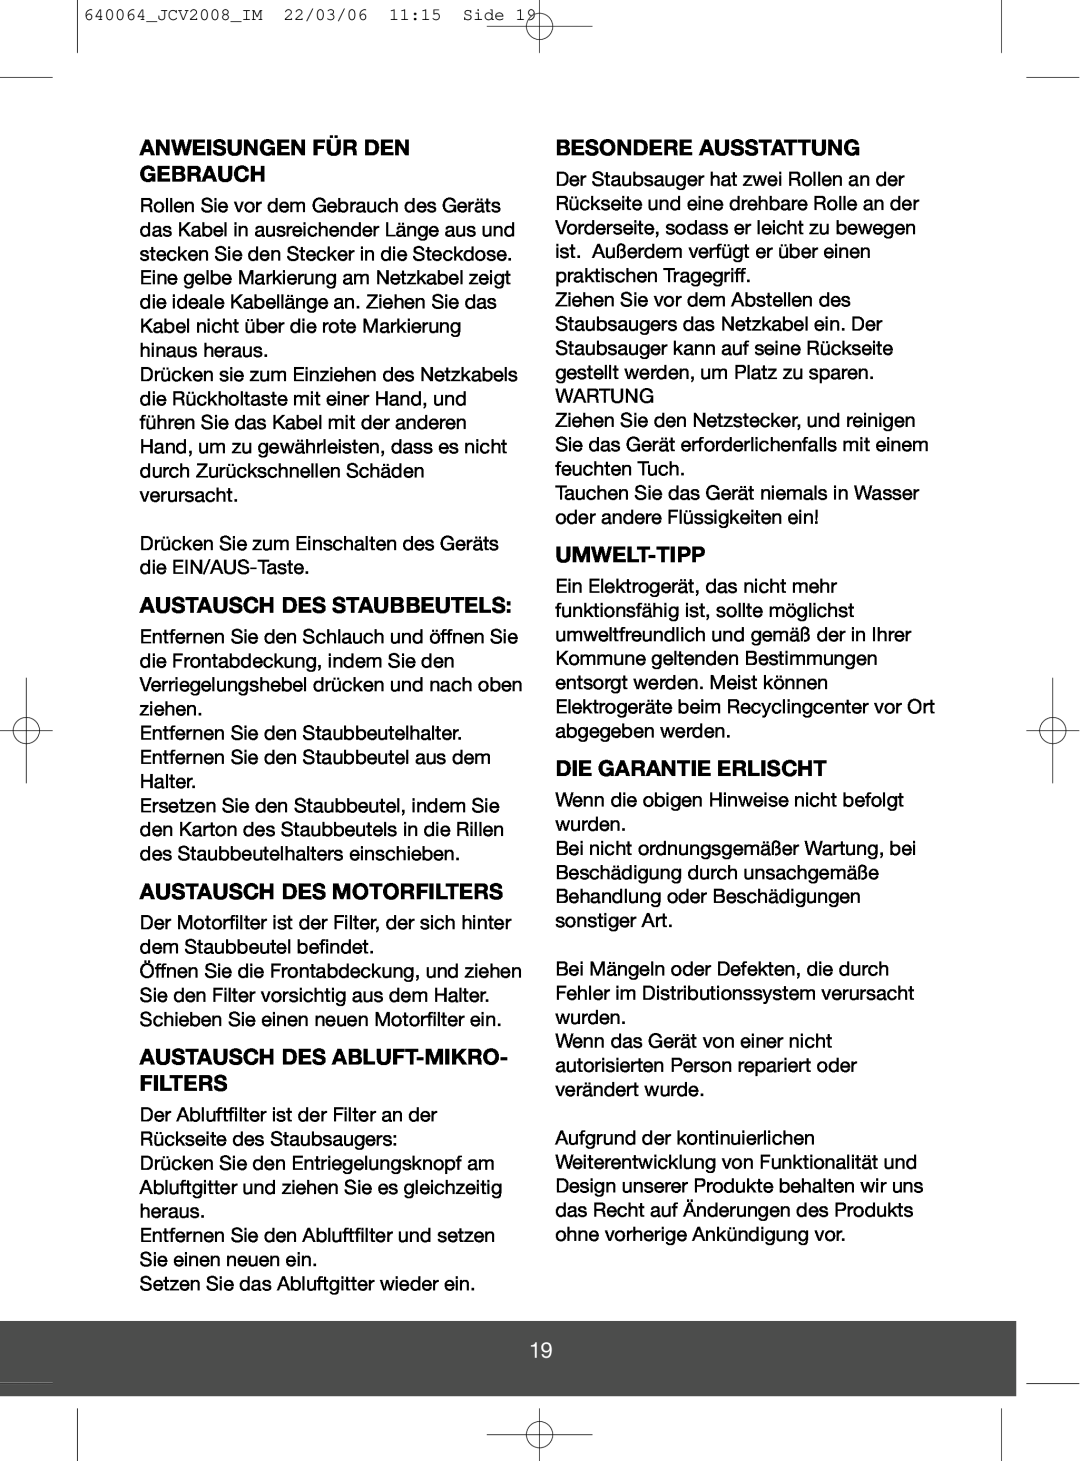 Melissa 640-123 manual Anweisungen Für Den Gebrauch, Austausch Des Staubbeutels, Austausch Des Motorfilters, Umwelt-Tipp 